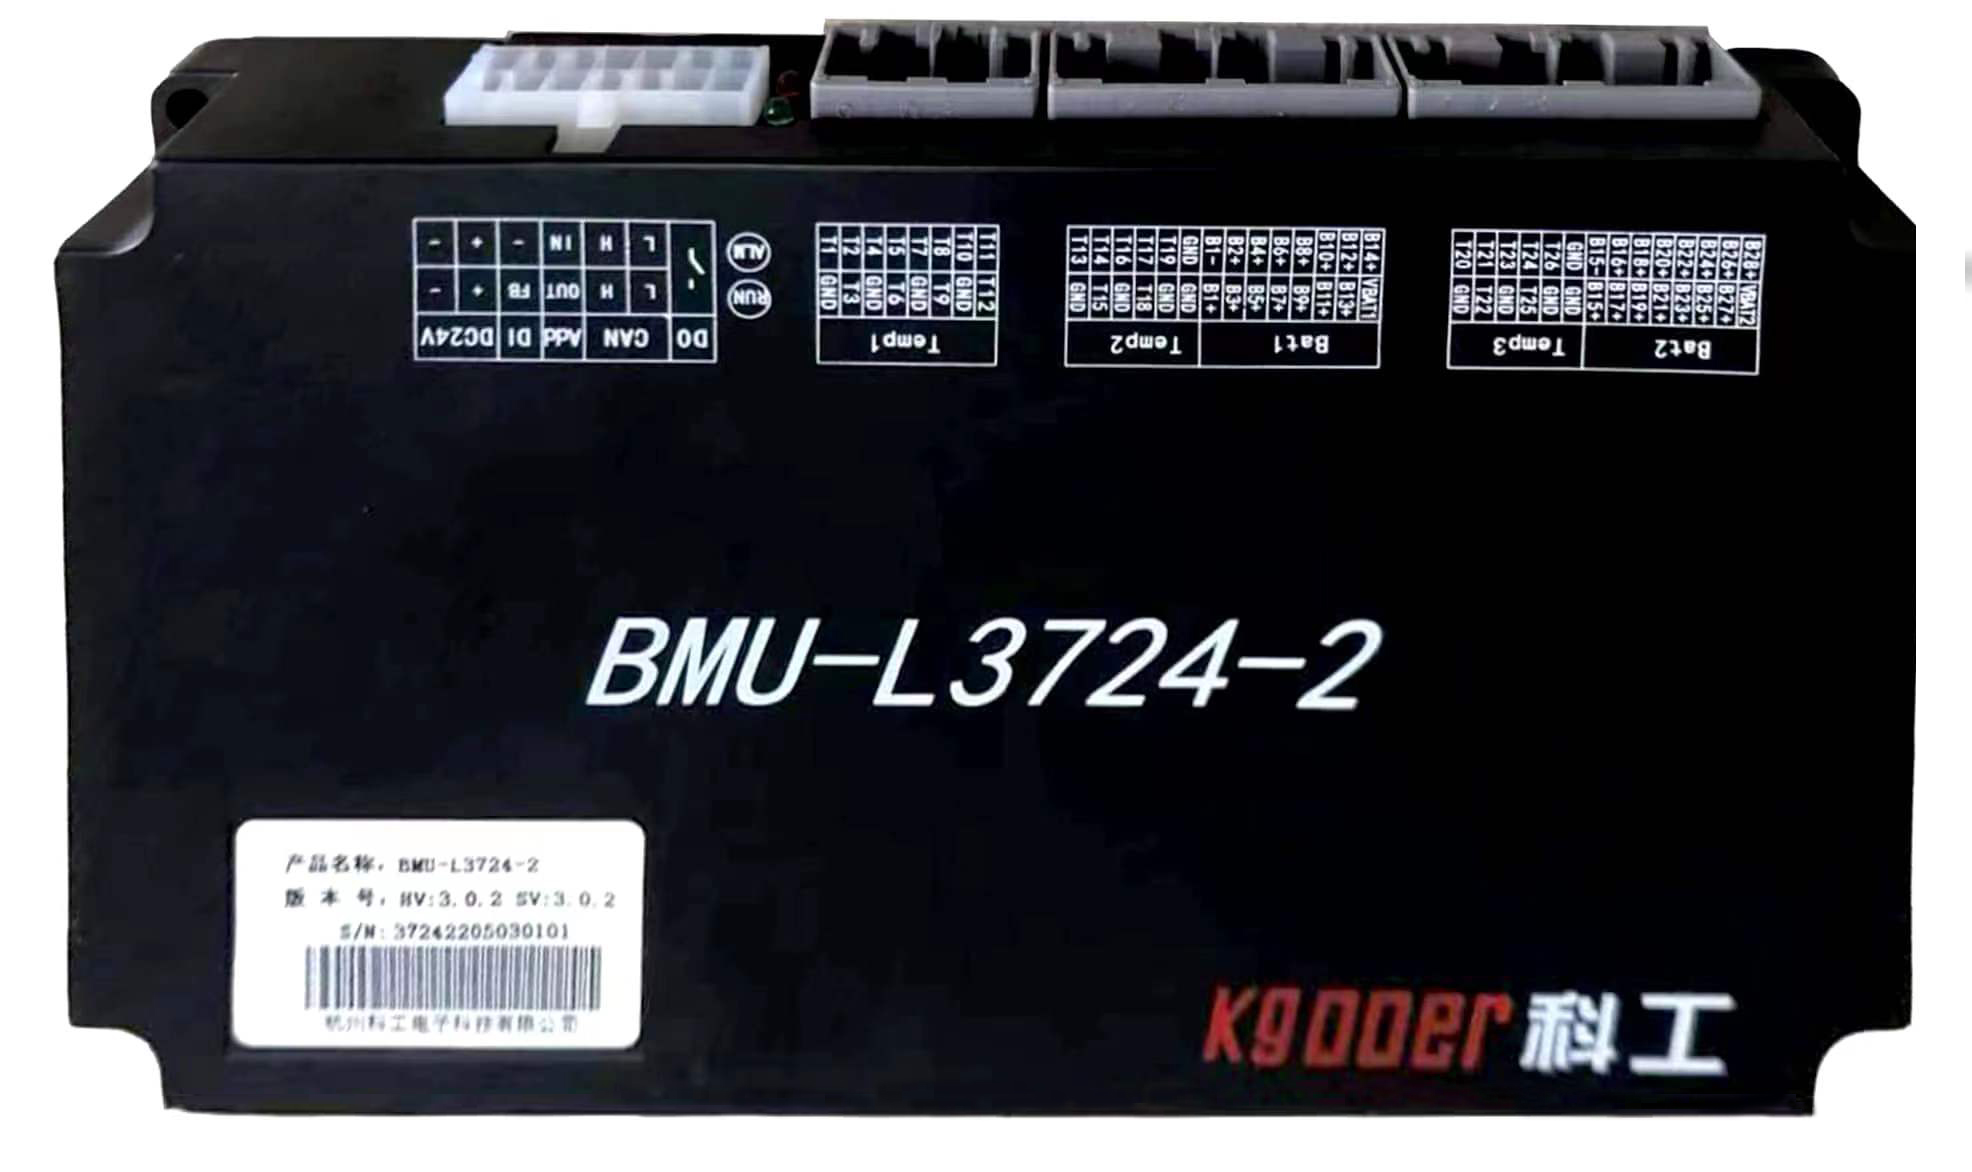 BMU-L3724-2